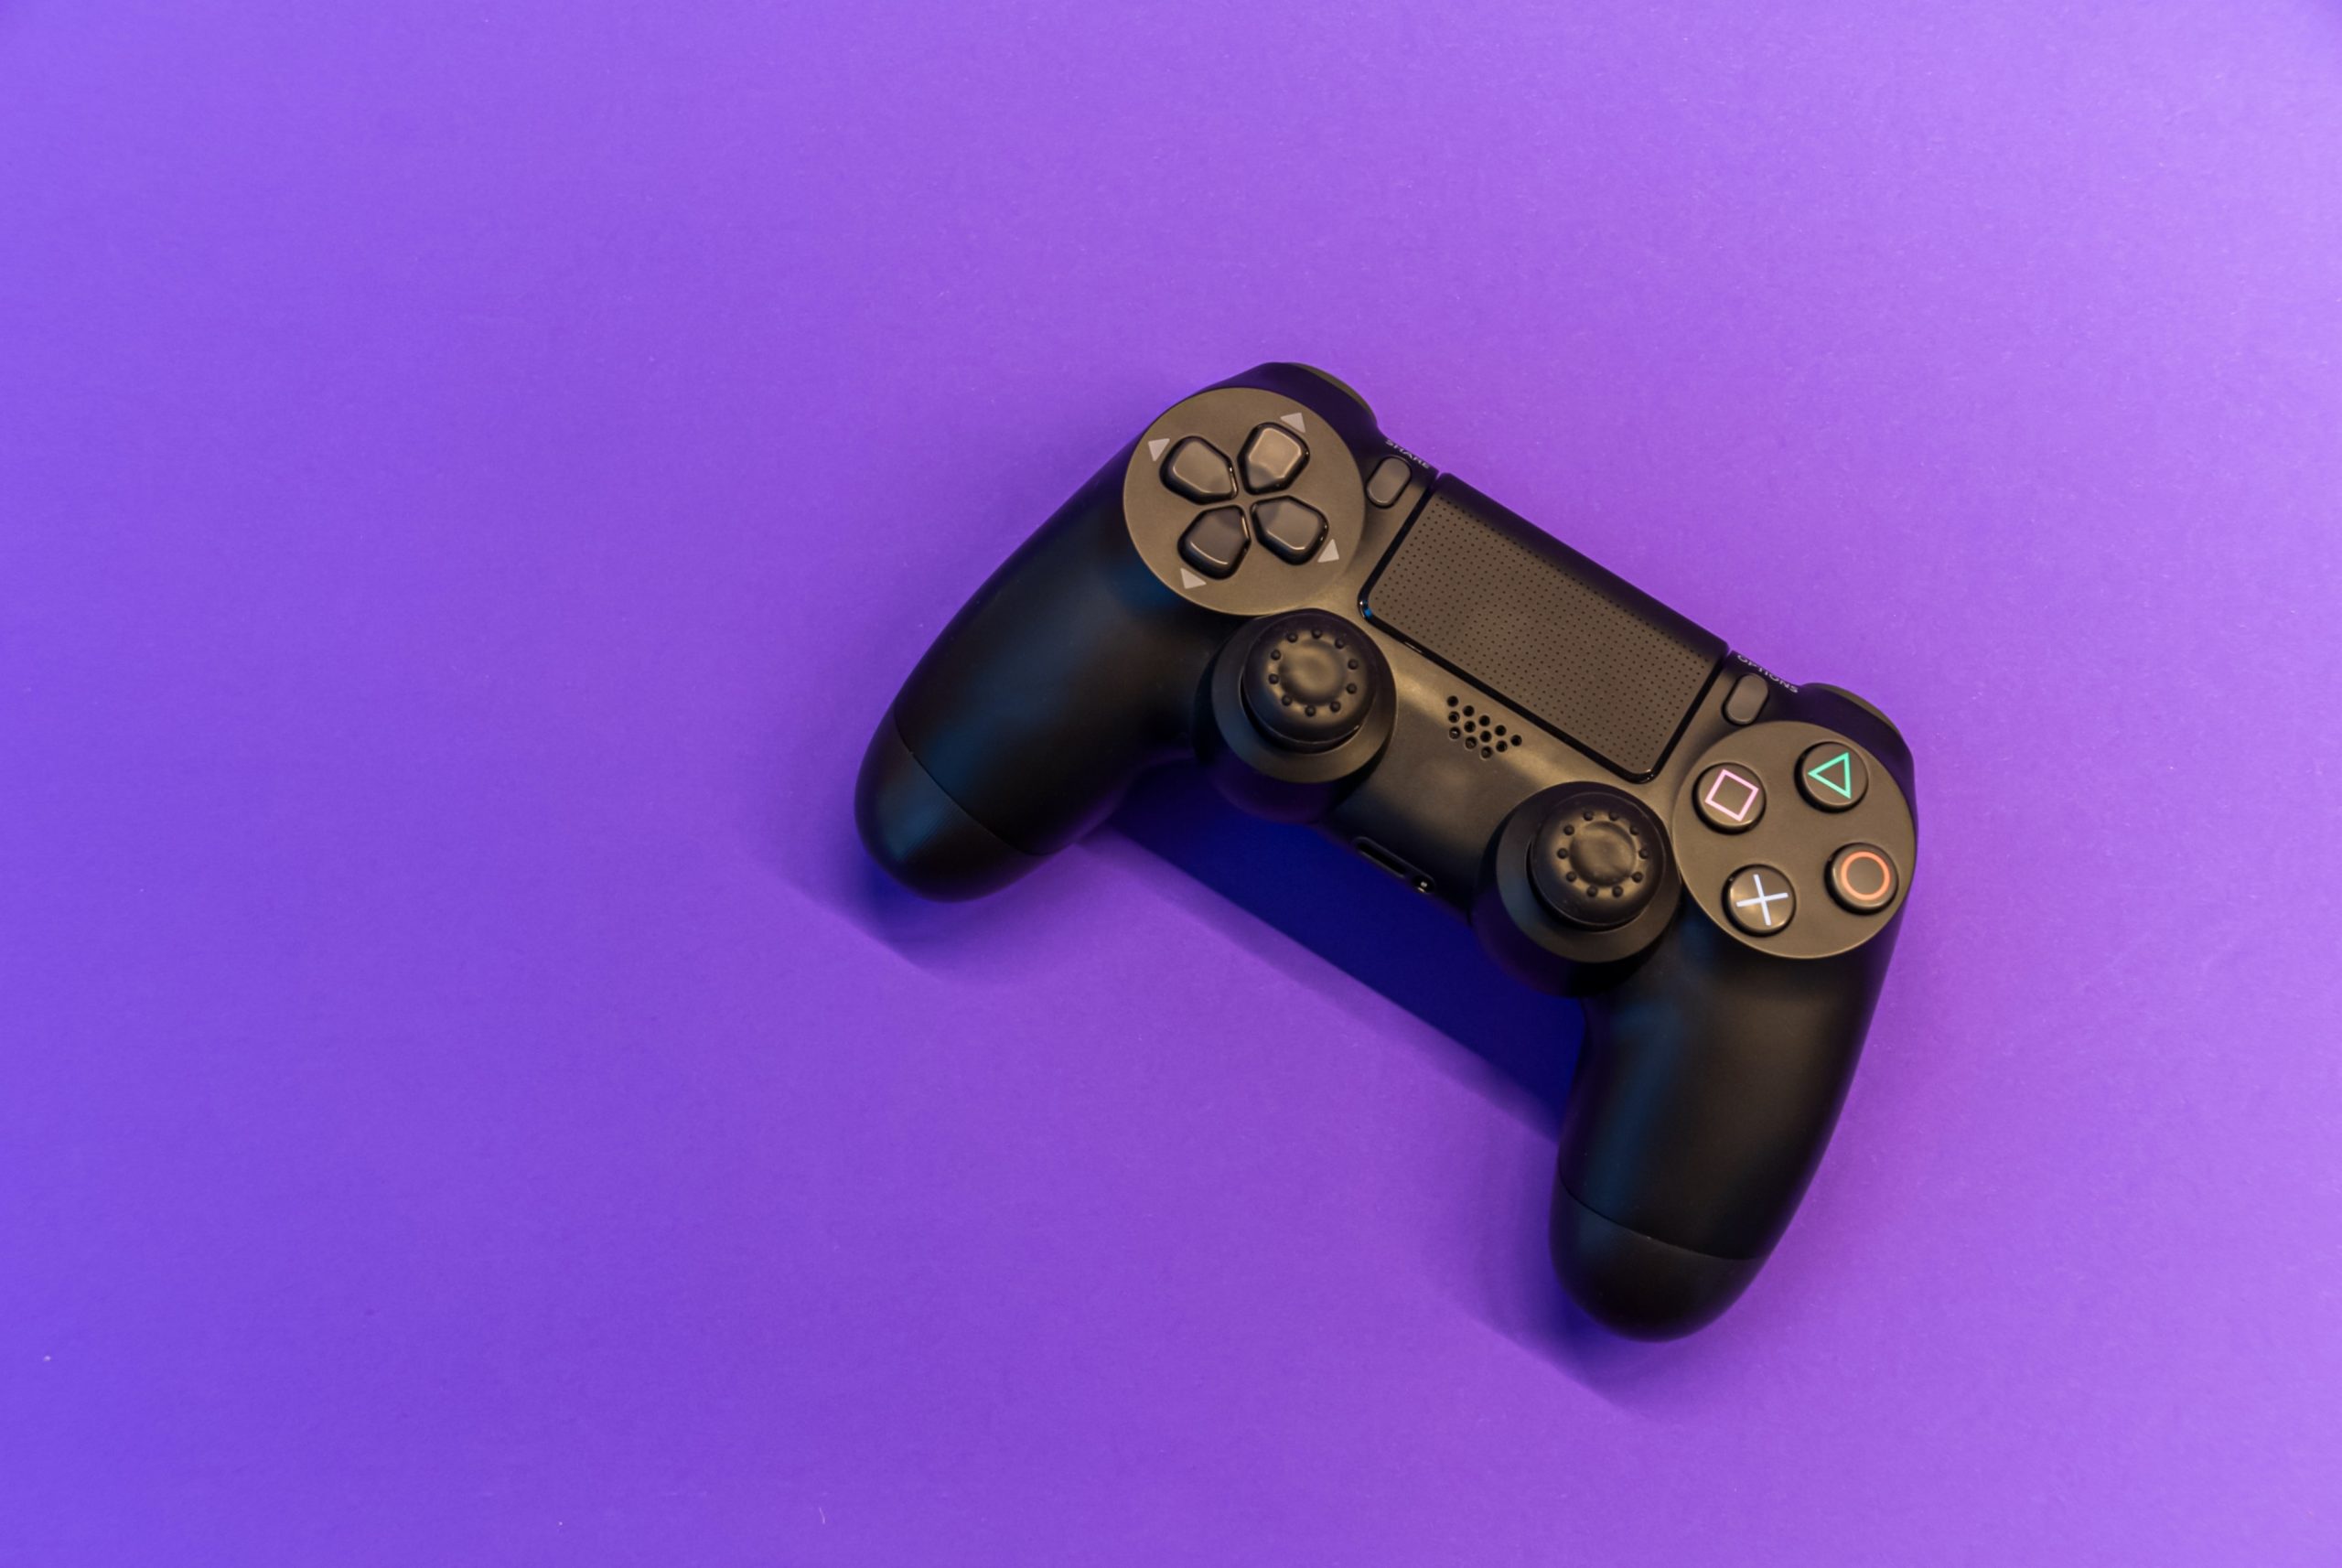 Console per videogiochi con sfondo viola in tema Narrative design